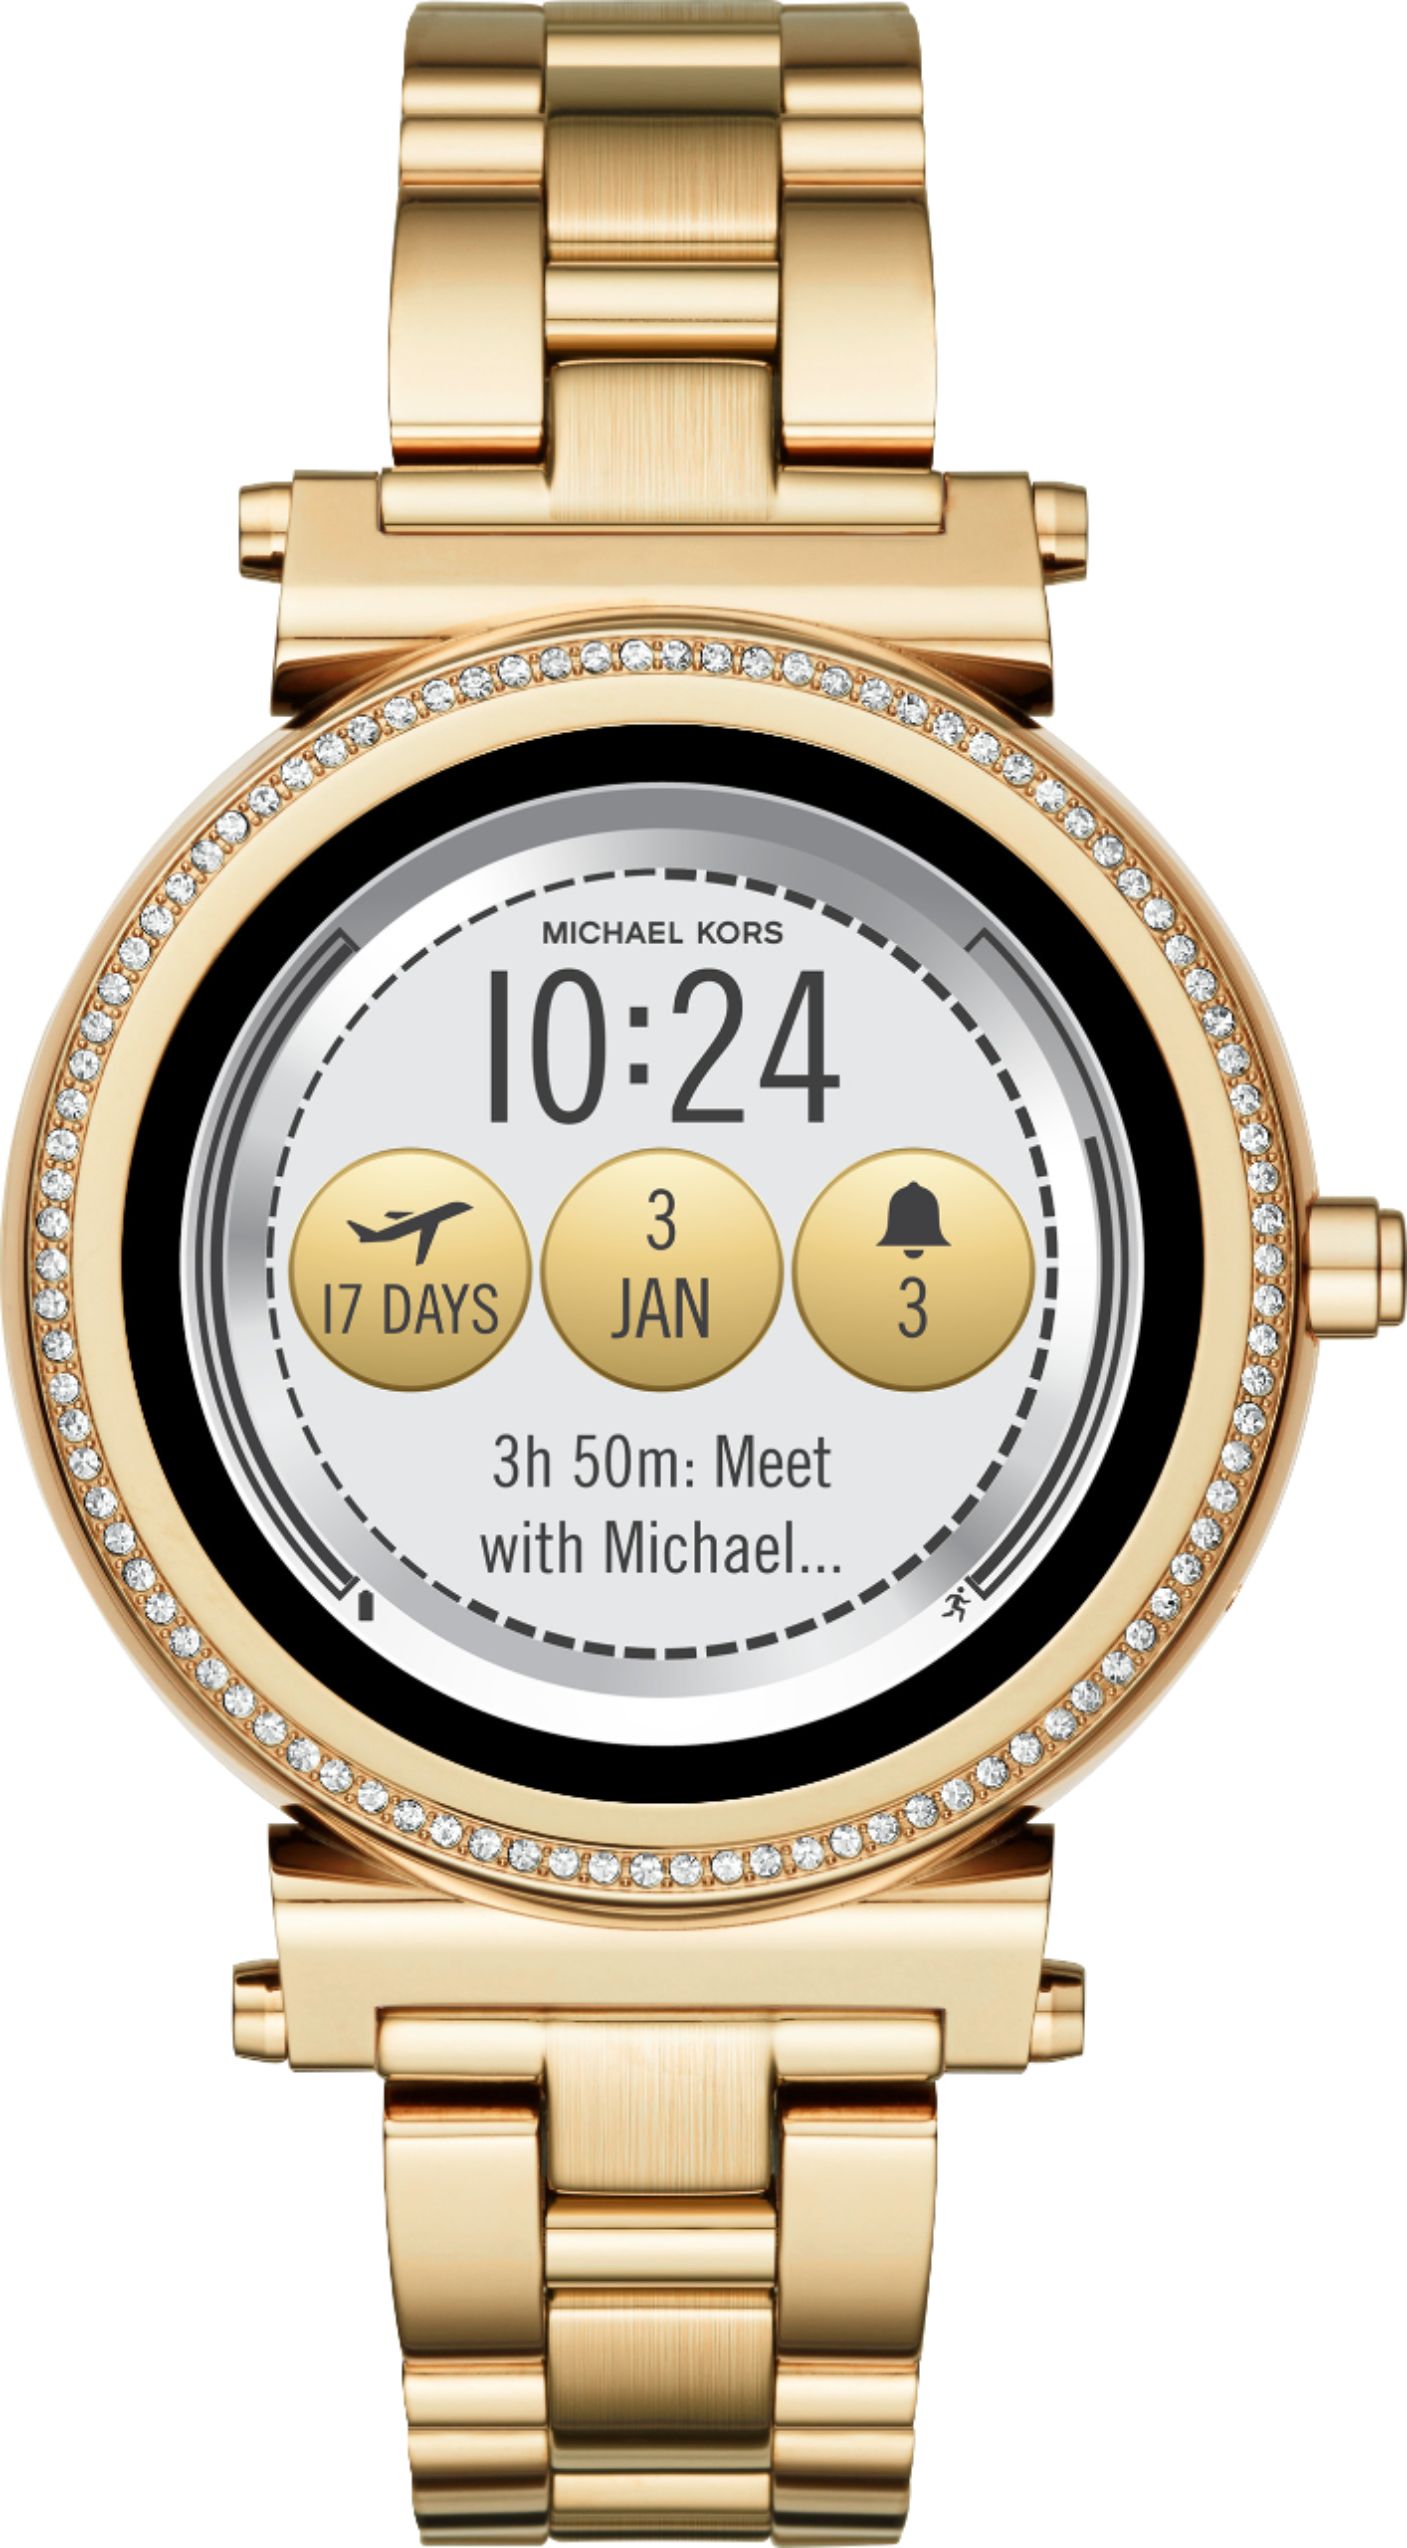 michael kors smartwatch at best buy